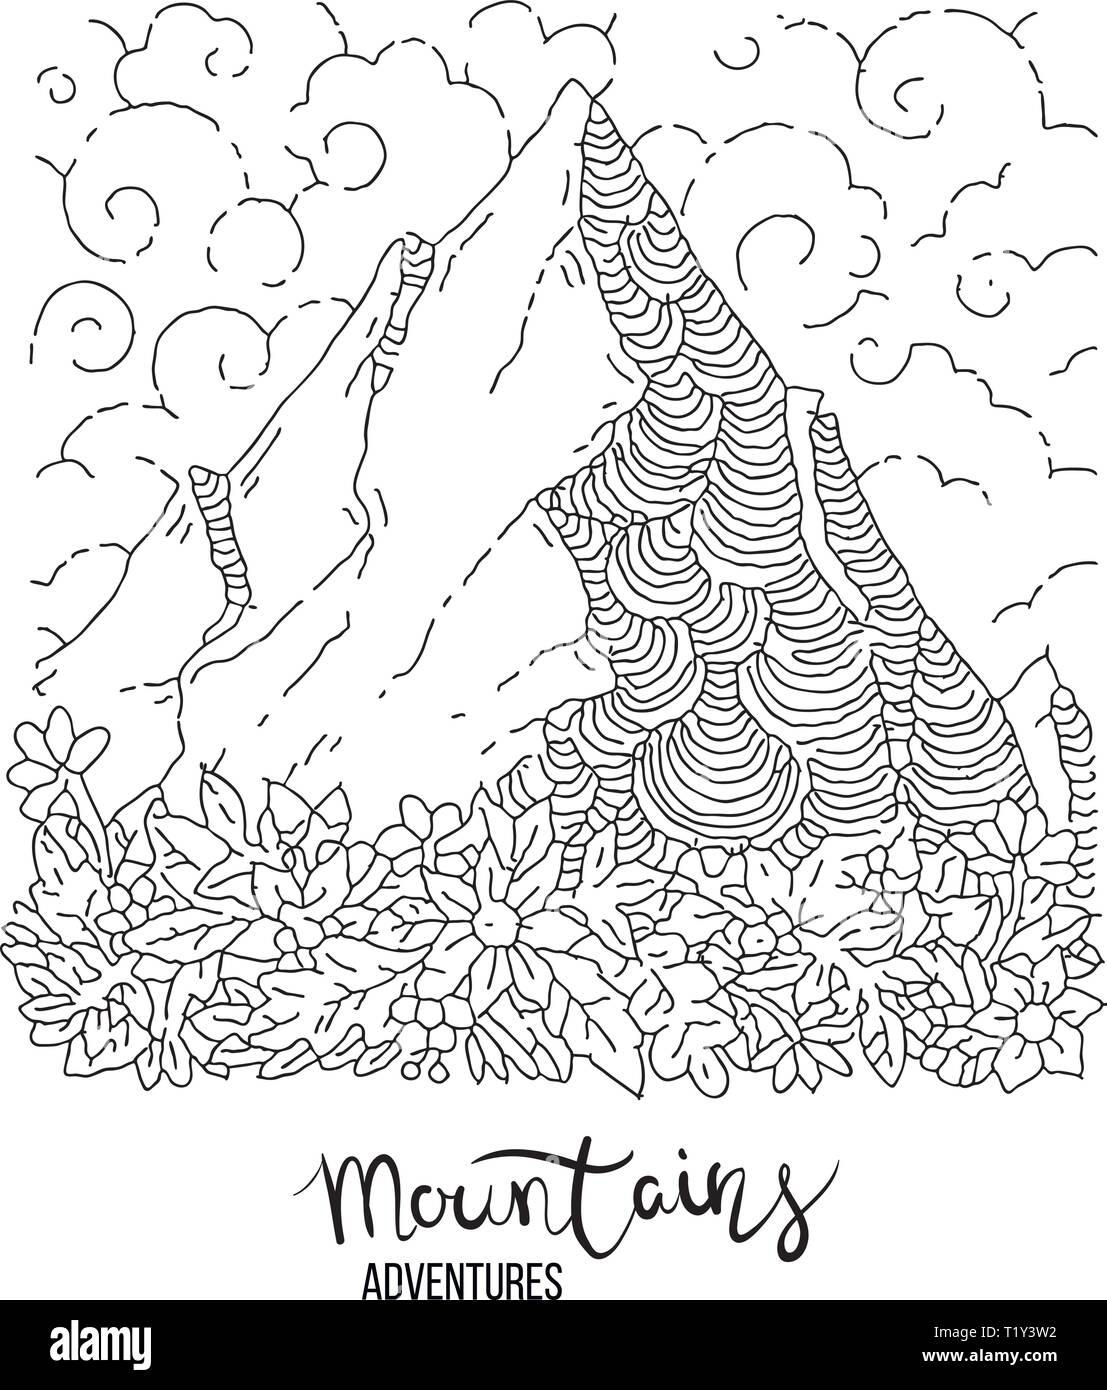 La main libre d'un pic de montagne, leur gravure, grunge textured illustrations vectorielles avec des fleurs Illustration de Vecteur